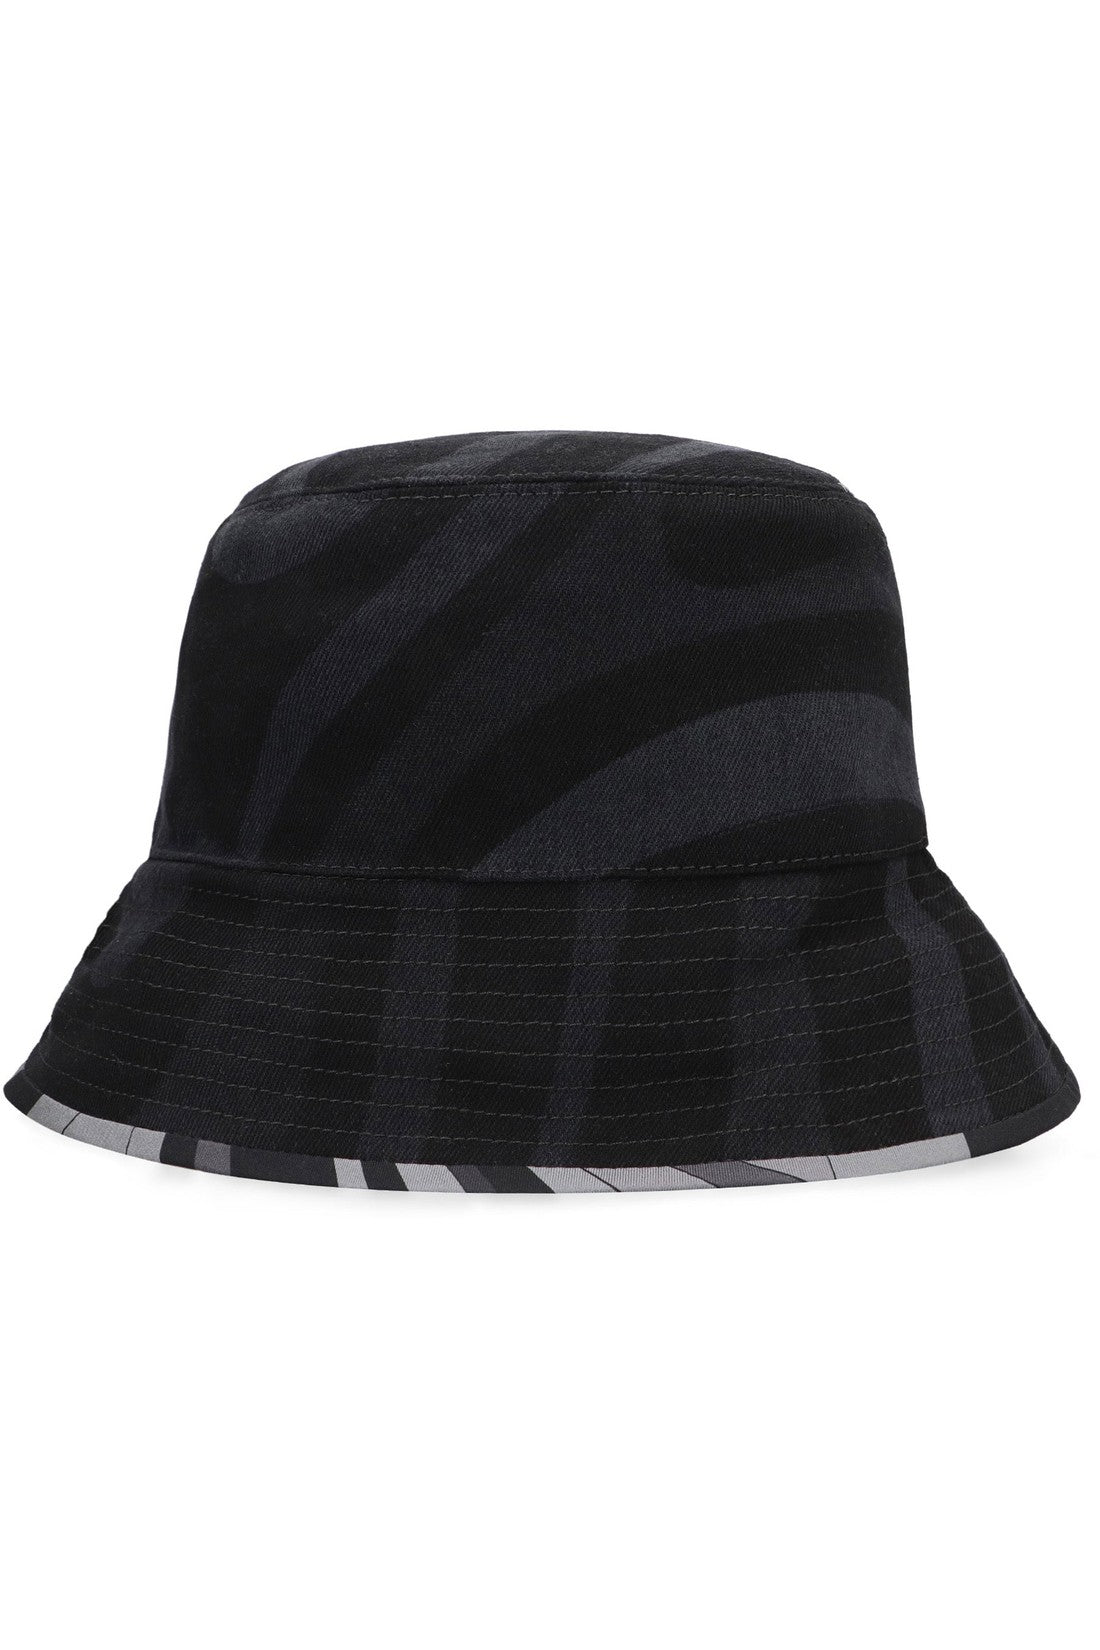 PUCCI-OUTLET-SALE-Bucket hat-ARCHIVIST